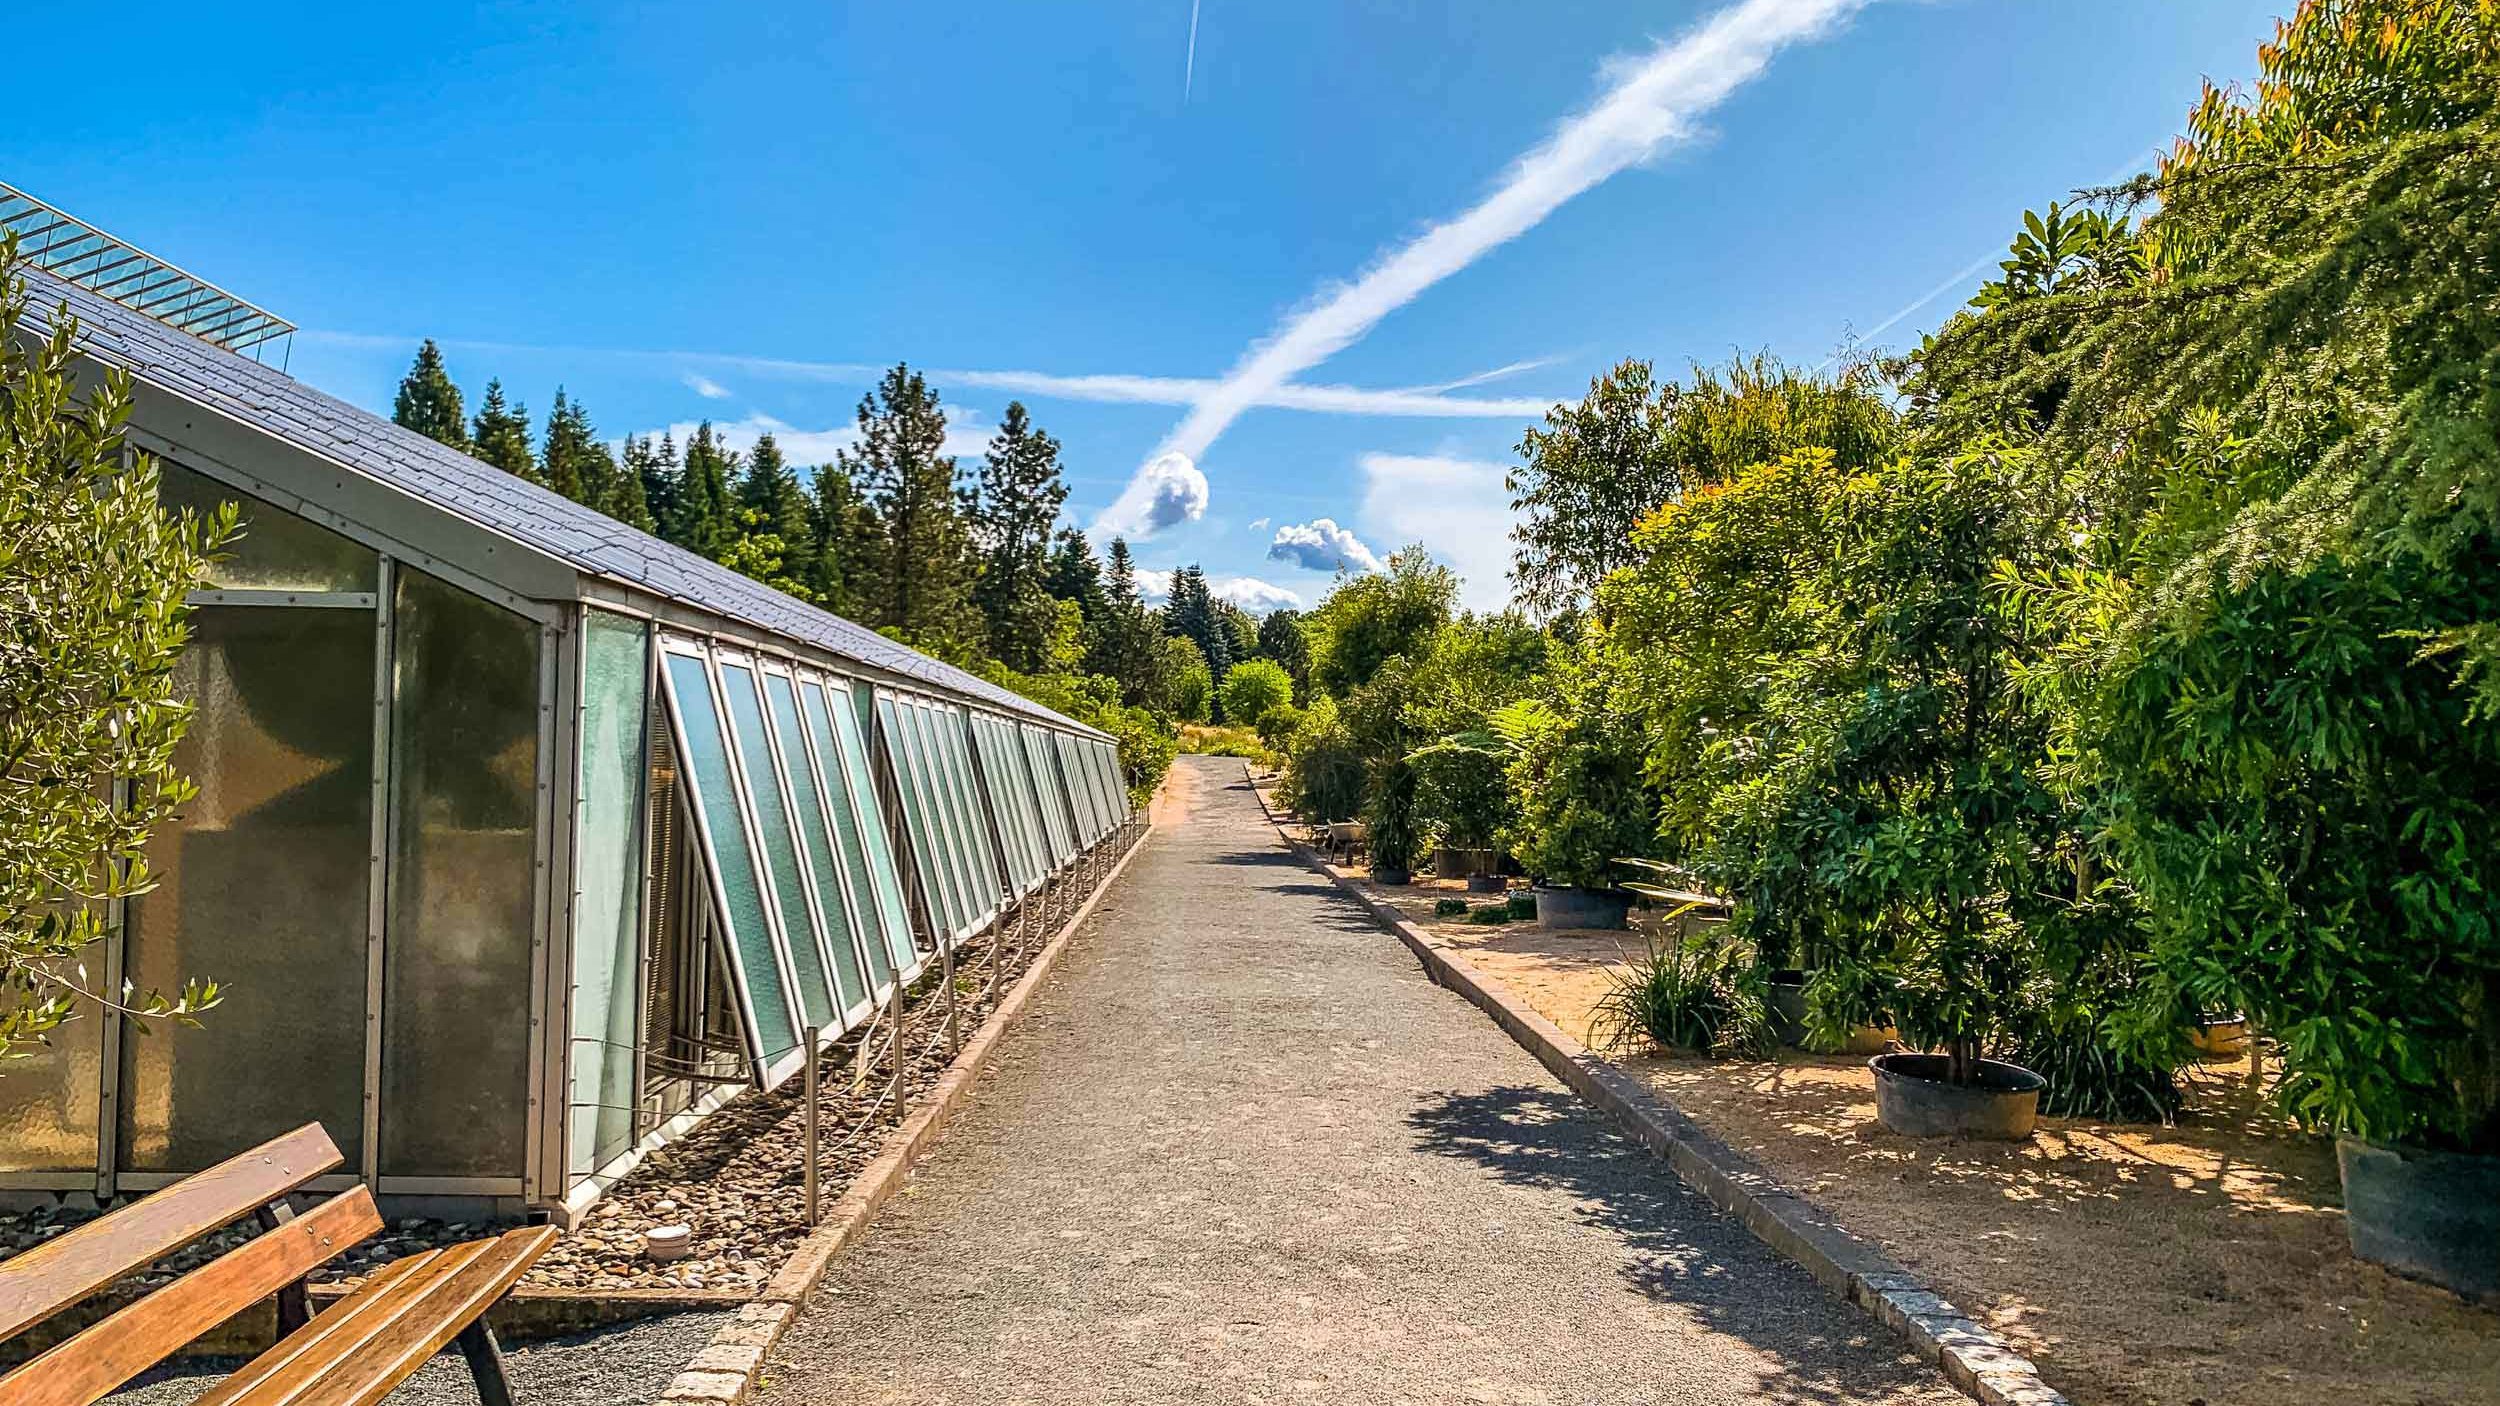 Ökologisch-Botanischer Garten der Universität Bayreuth Aussenanlagen